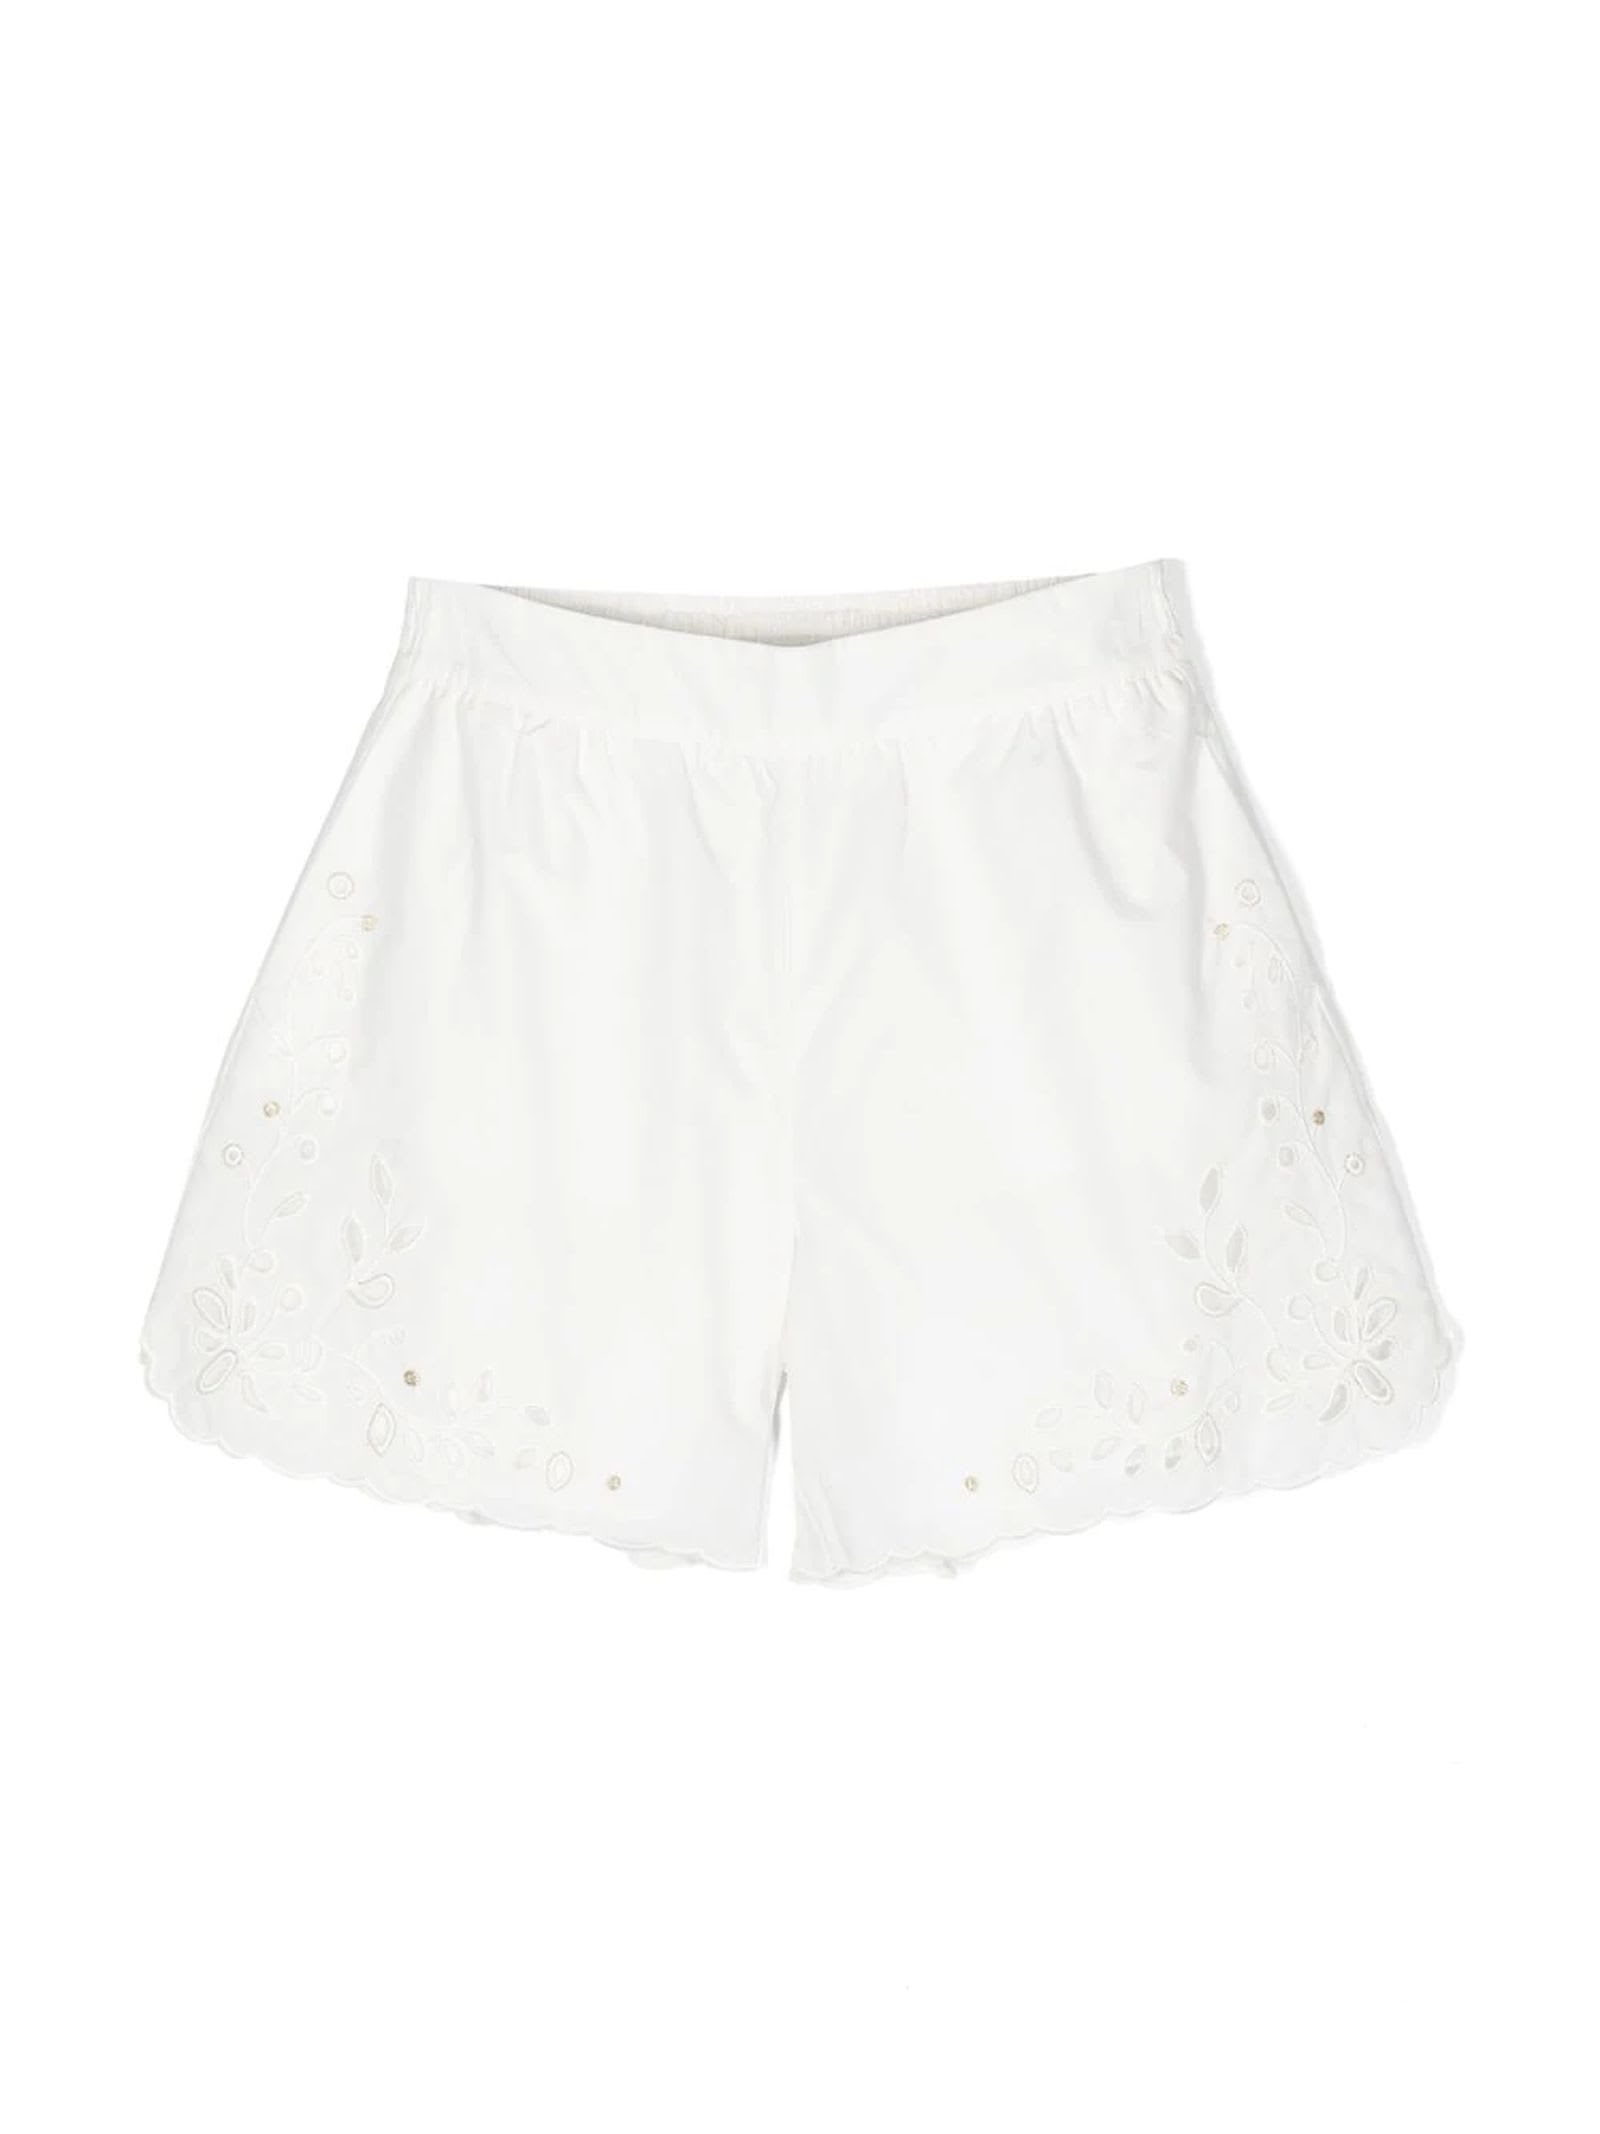 Chloé White Cotton Shorts